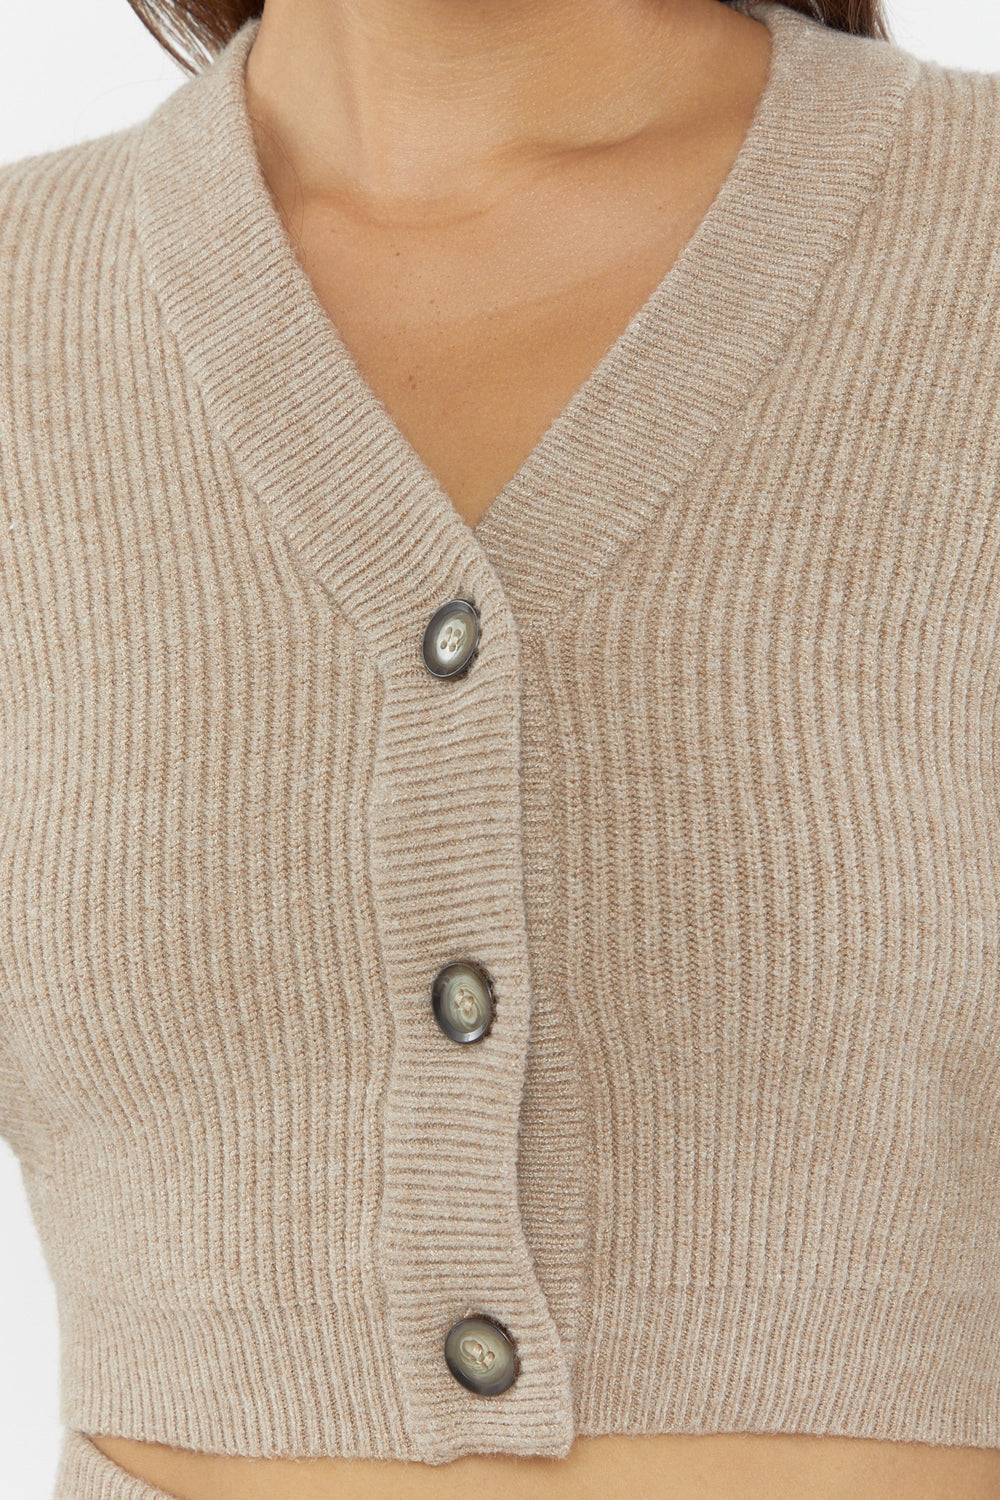 Ribbed Cami & Cardigan Sweater Set Tan